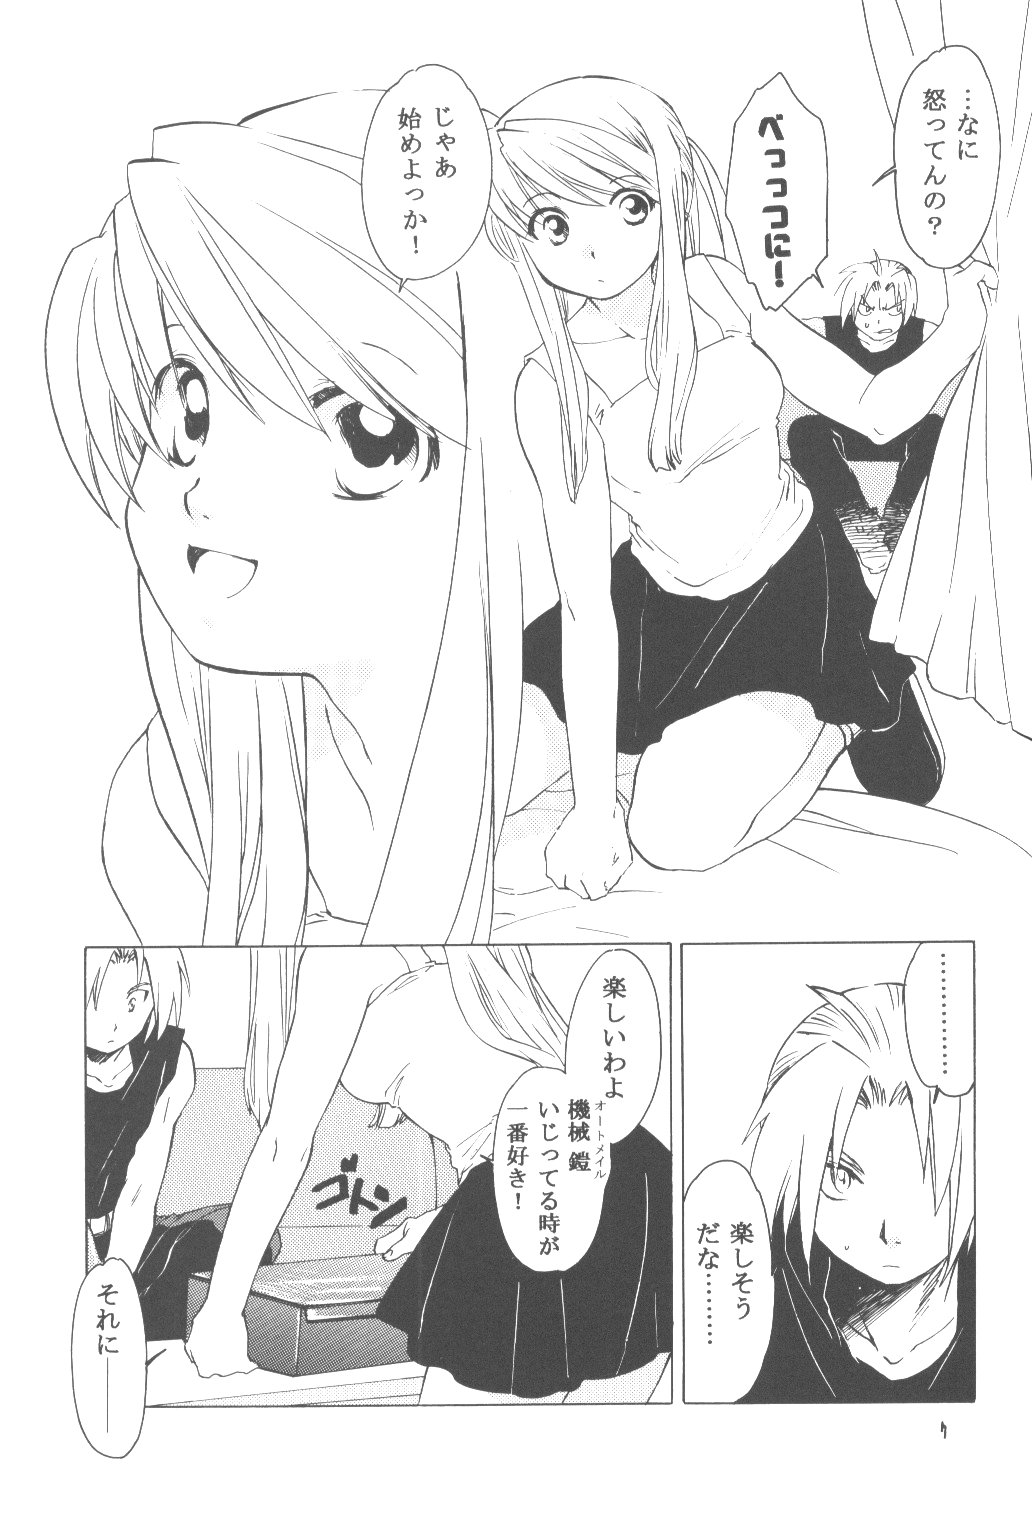 Russian Hentai Manga Doujinshi Anime Porn 6